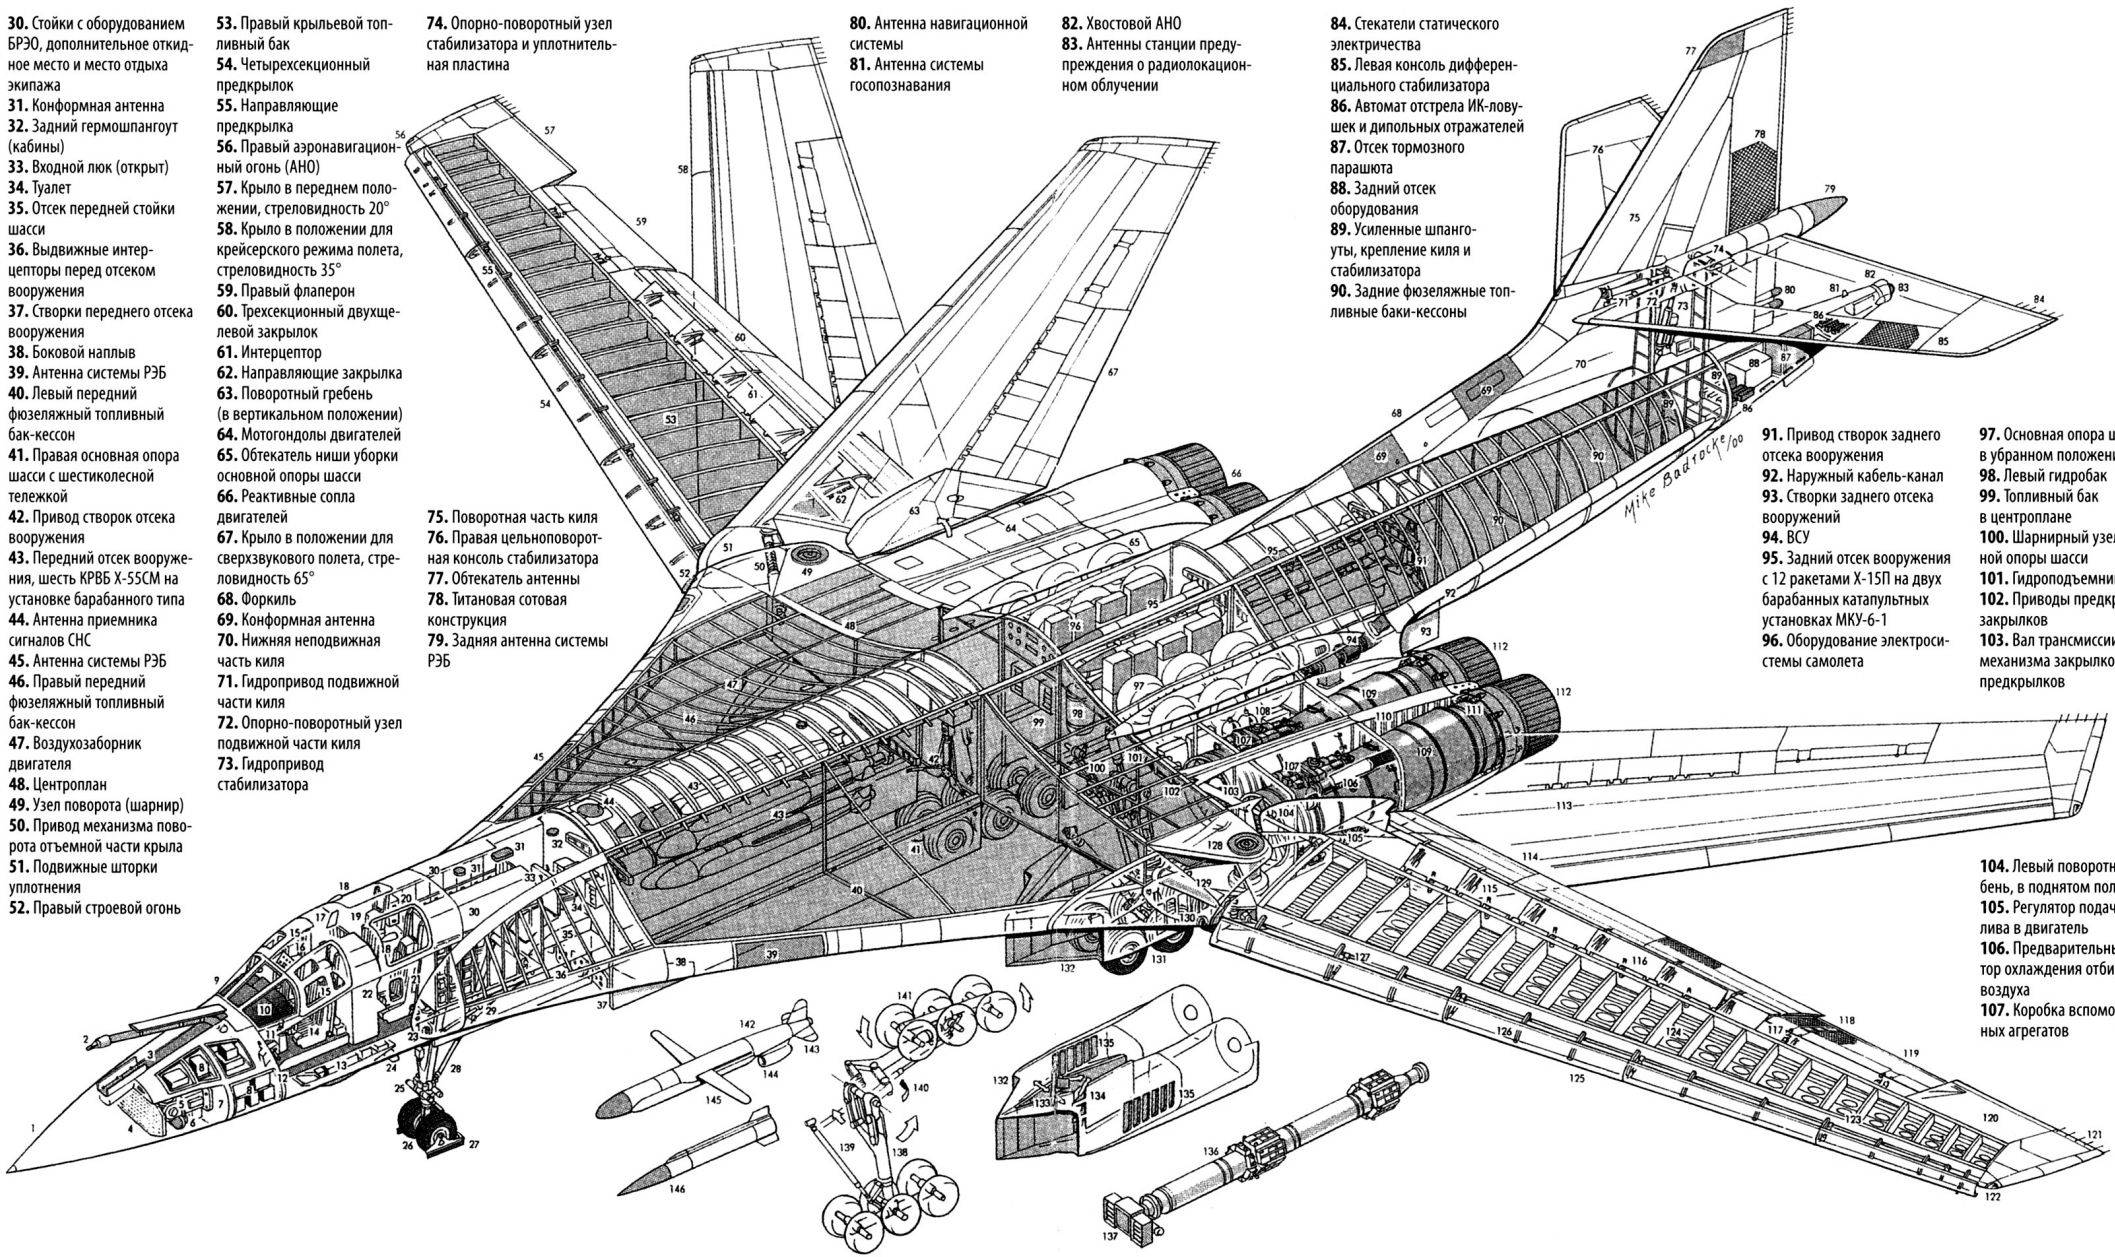 Стратегический бомбардировщик ту-160, технические и летные характеристики «белого лебедя»